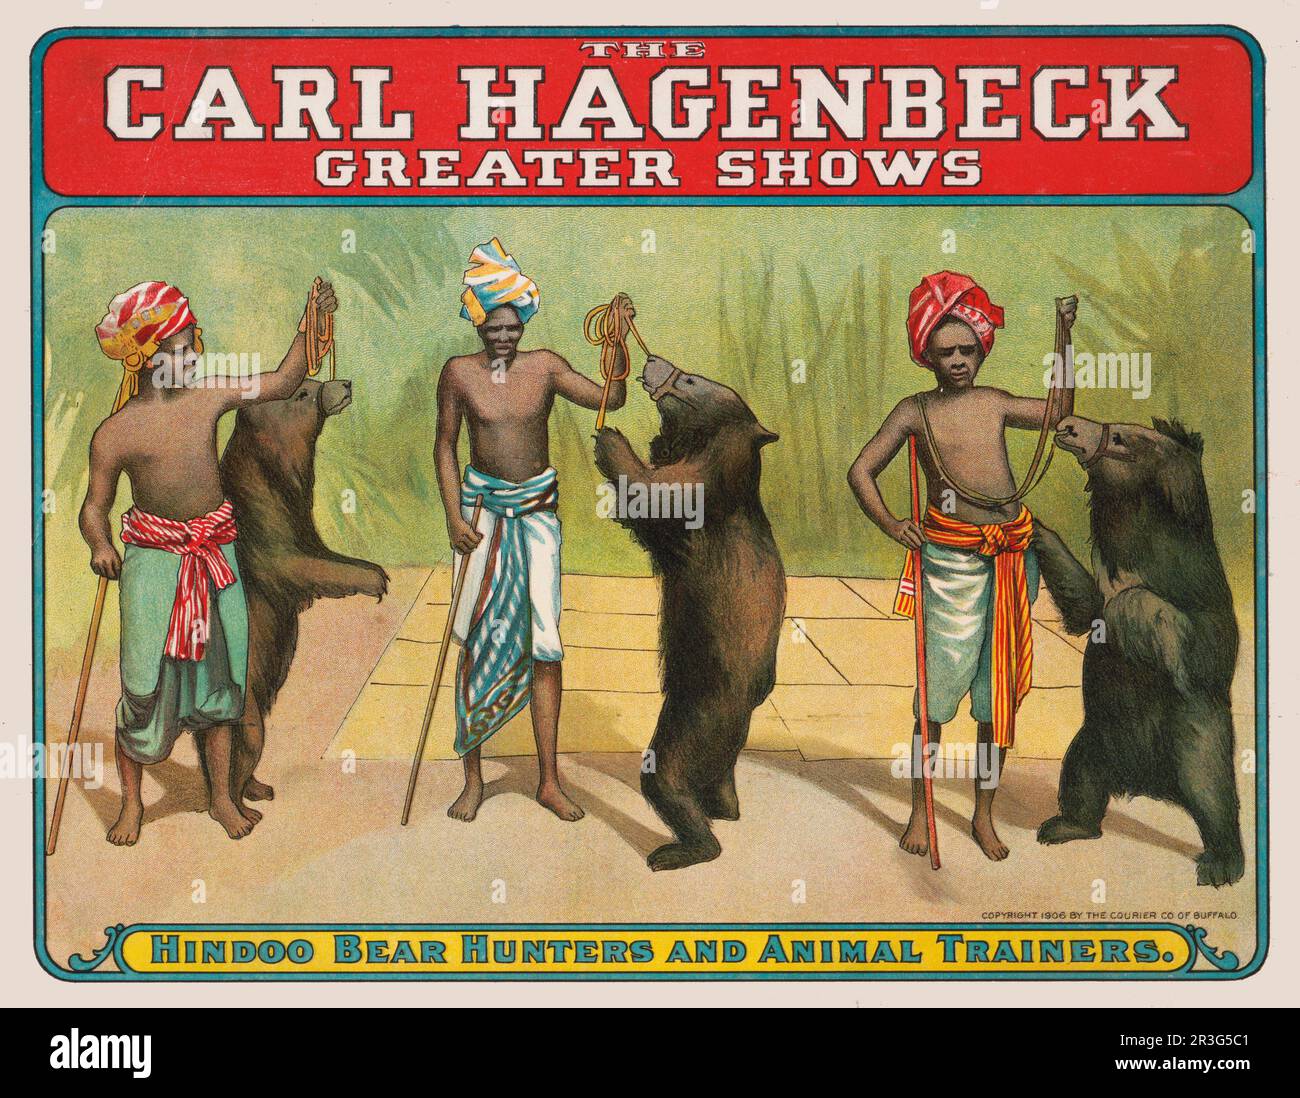 Affiche de cirque Carl Hagenbeck vintage montrant des ours et des formateurs hindous, vers 1906. Banque D'Images